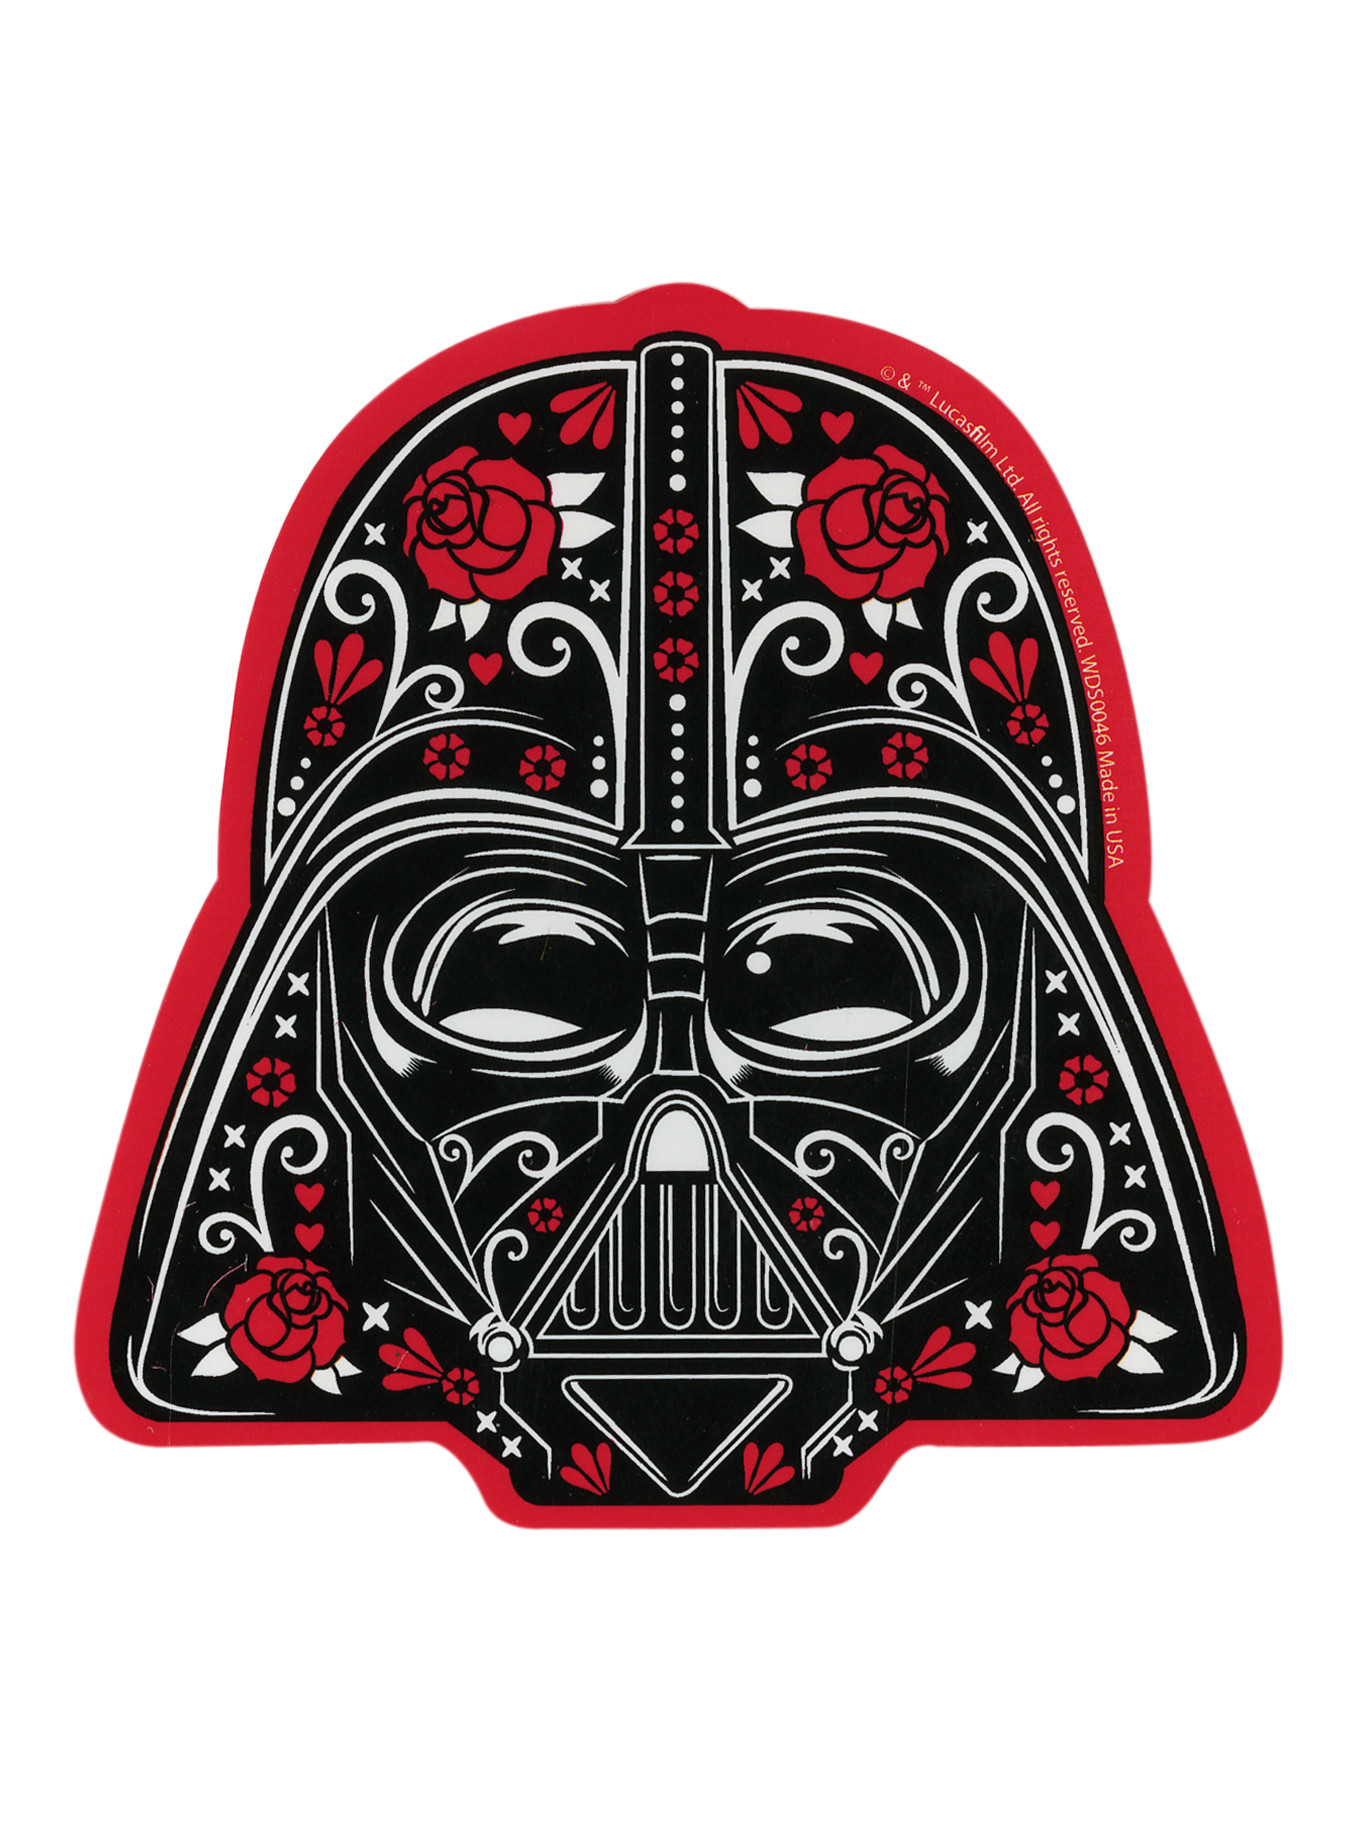 Darth Vader Sugar Skull - HD Wallpaper 